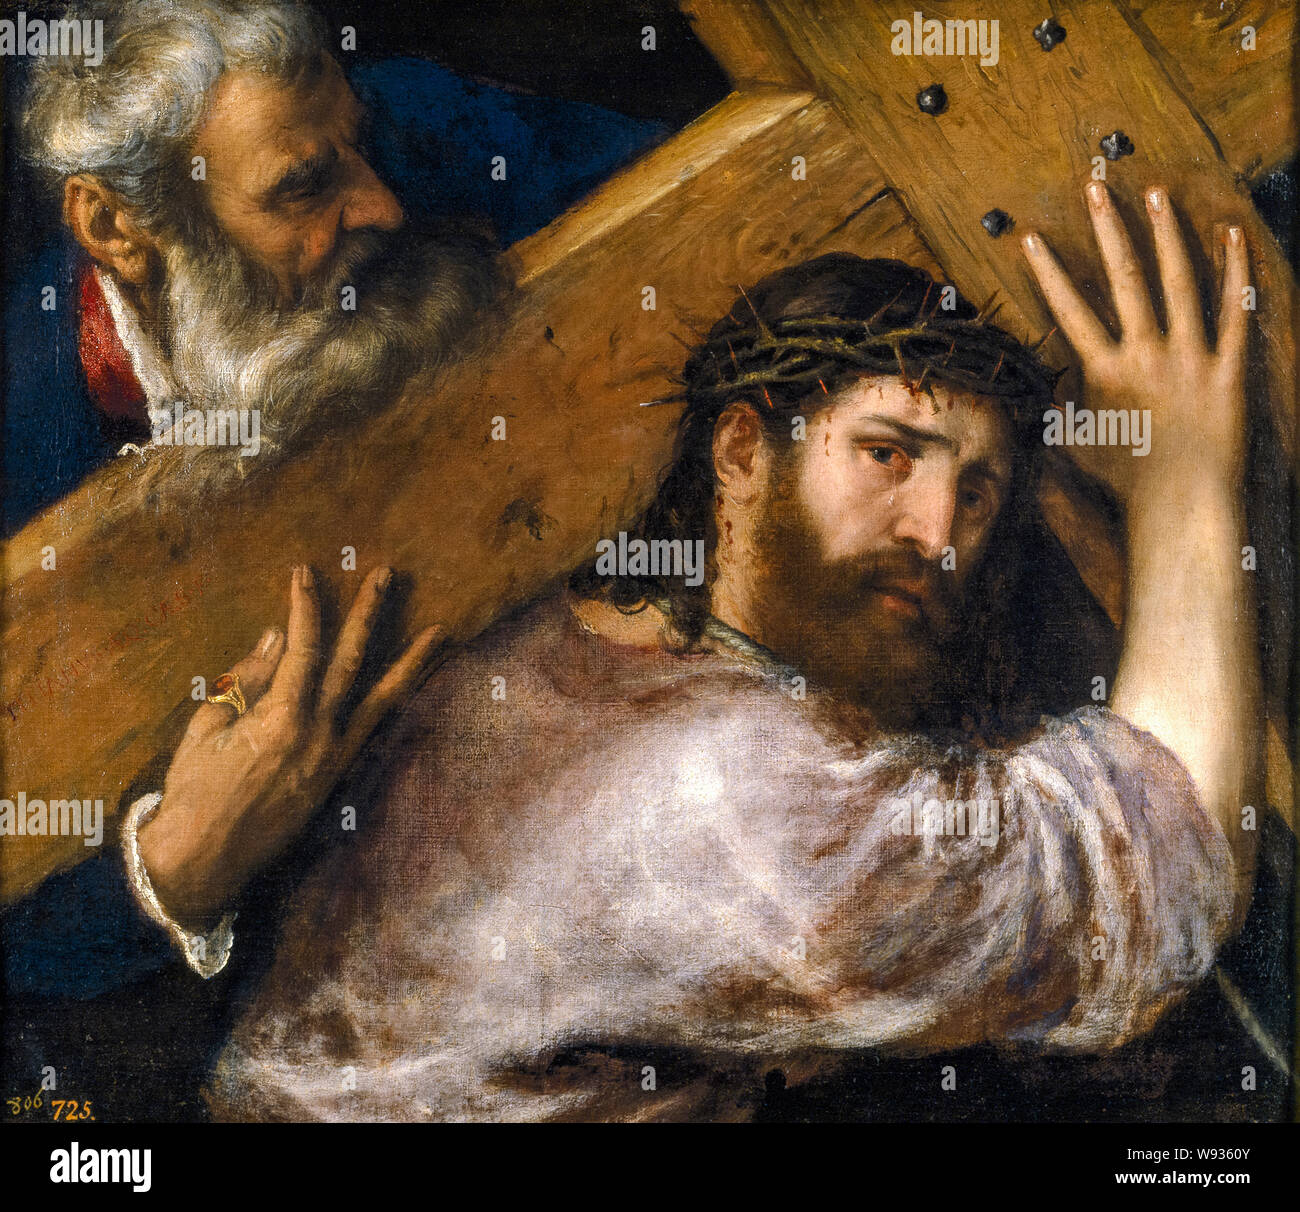 Tiziano, Cristo llevando la cruz, pintura, 1565 Foto de stock